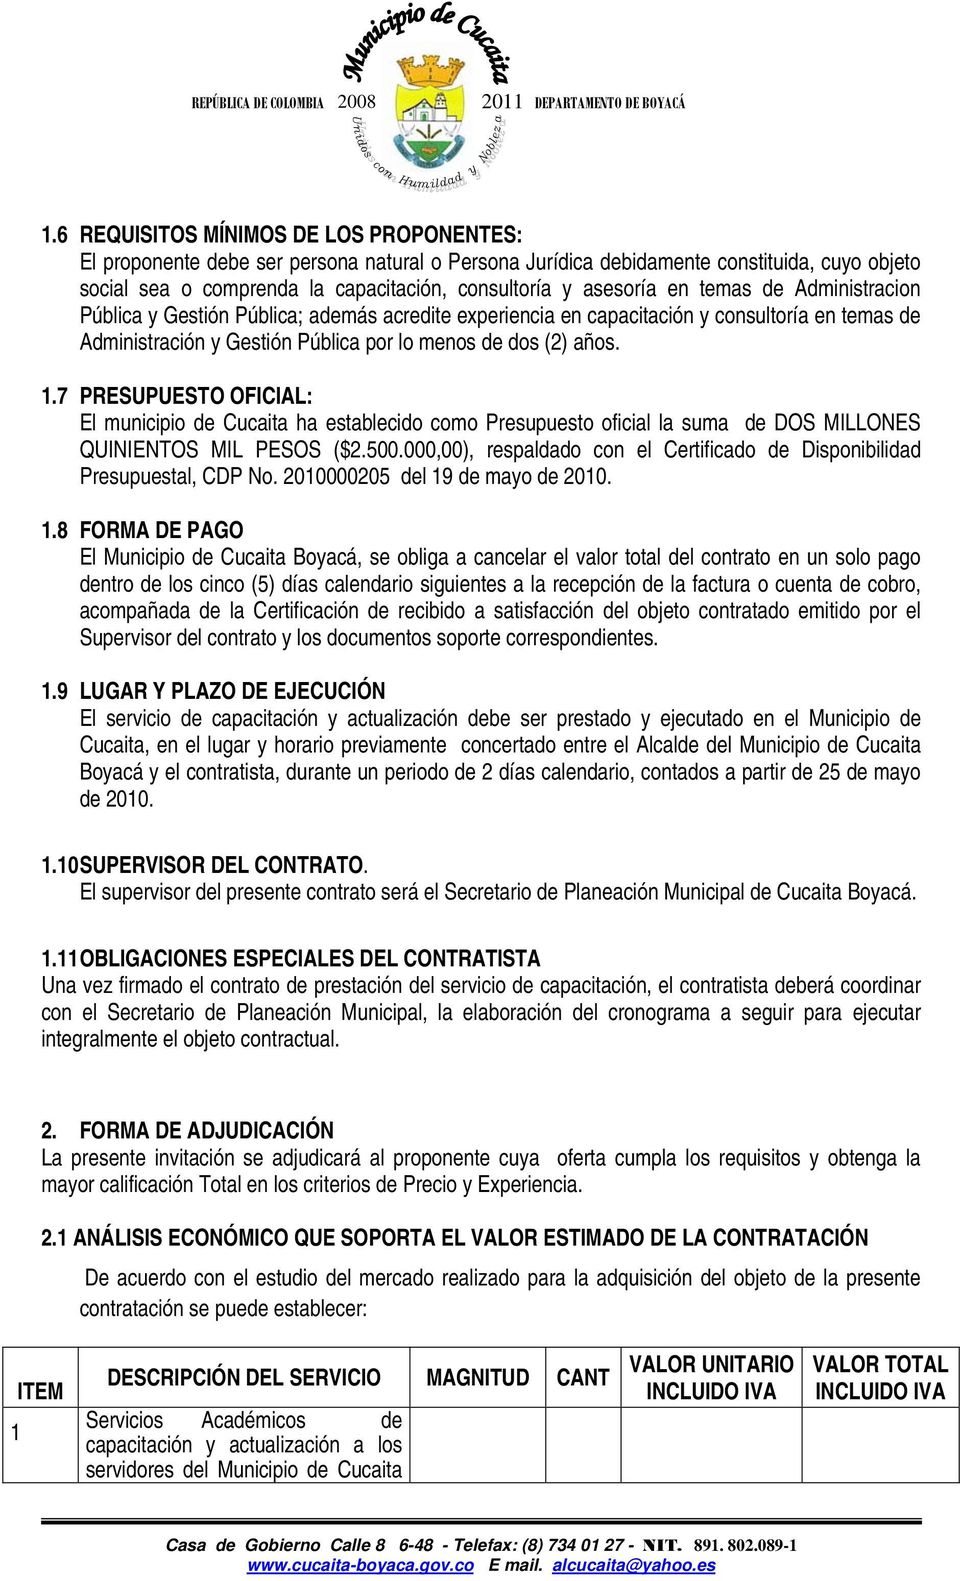 7 PRESUPUESTO OFICIAL: El municipio de Cucaita ha establecido como Presupuesto oficial la suma de DOS MILLONES QUINIENTOS MIL PESOS ($2.500.